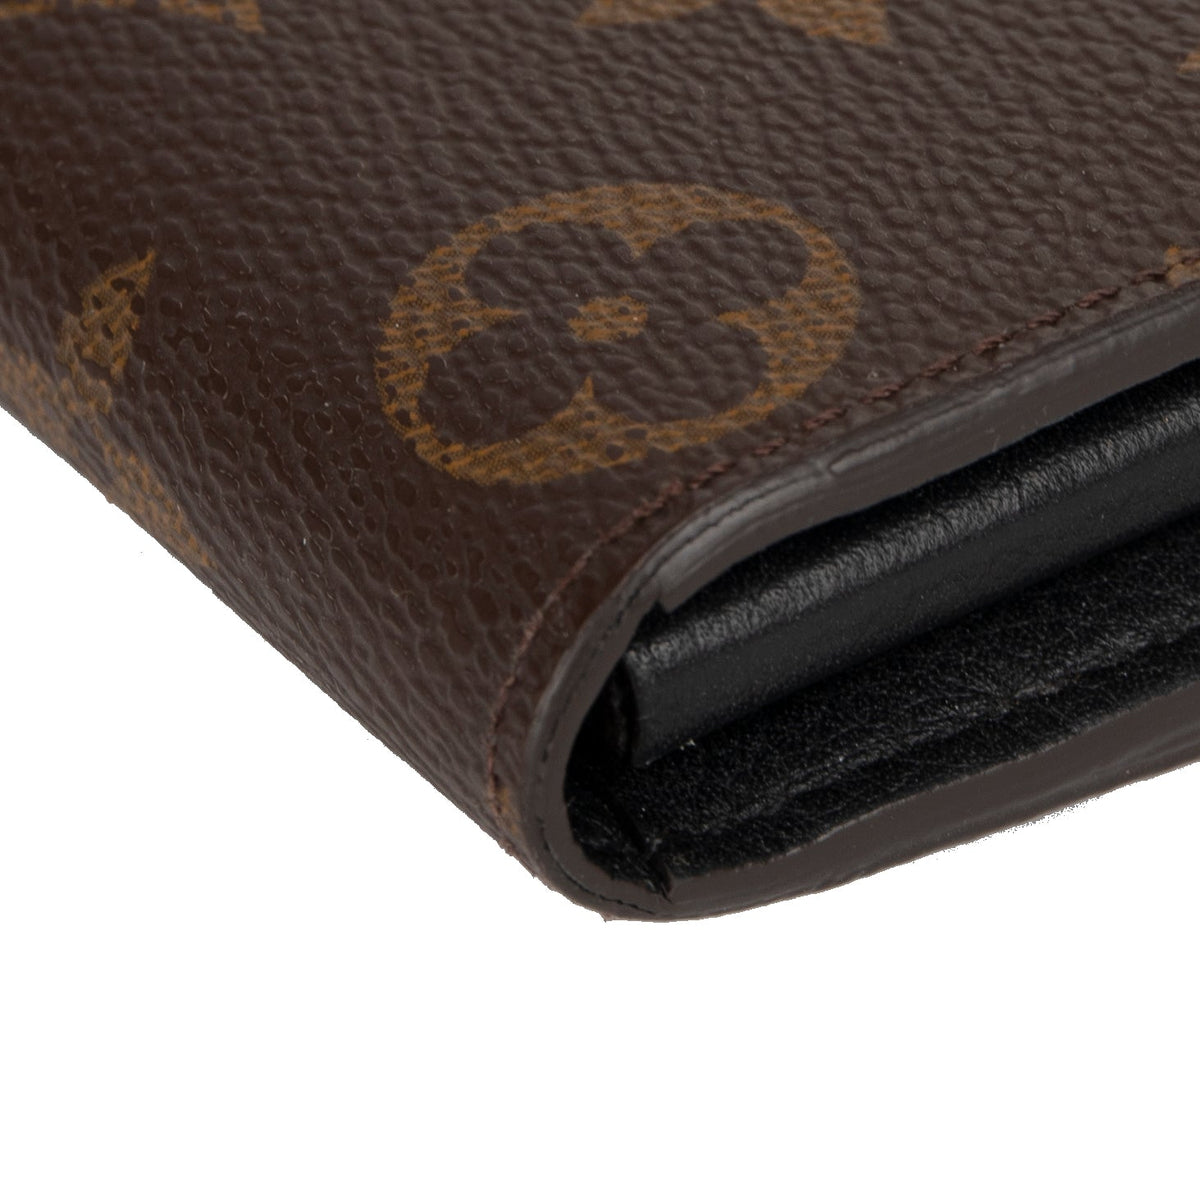 Louis Vuitton Pallas Leather Wallet